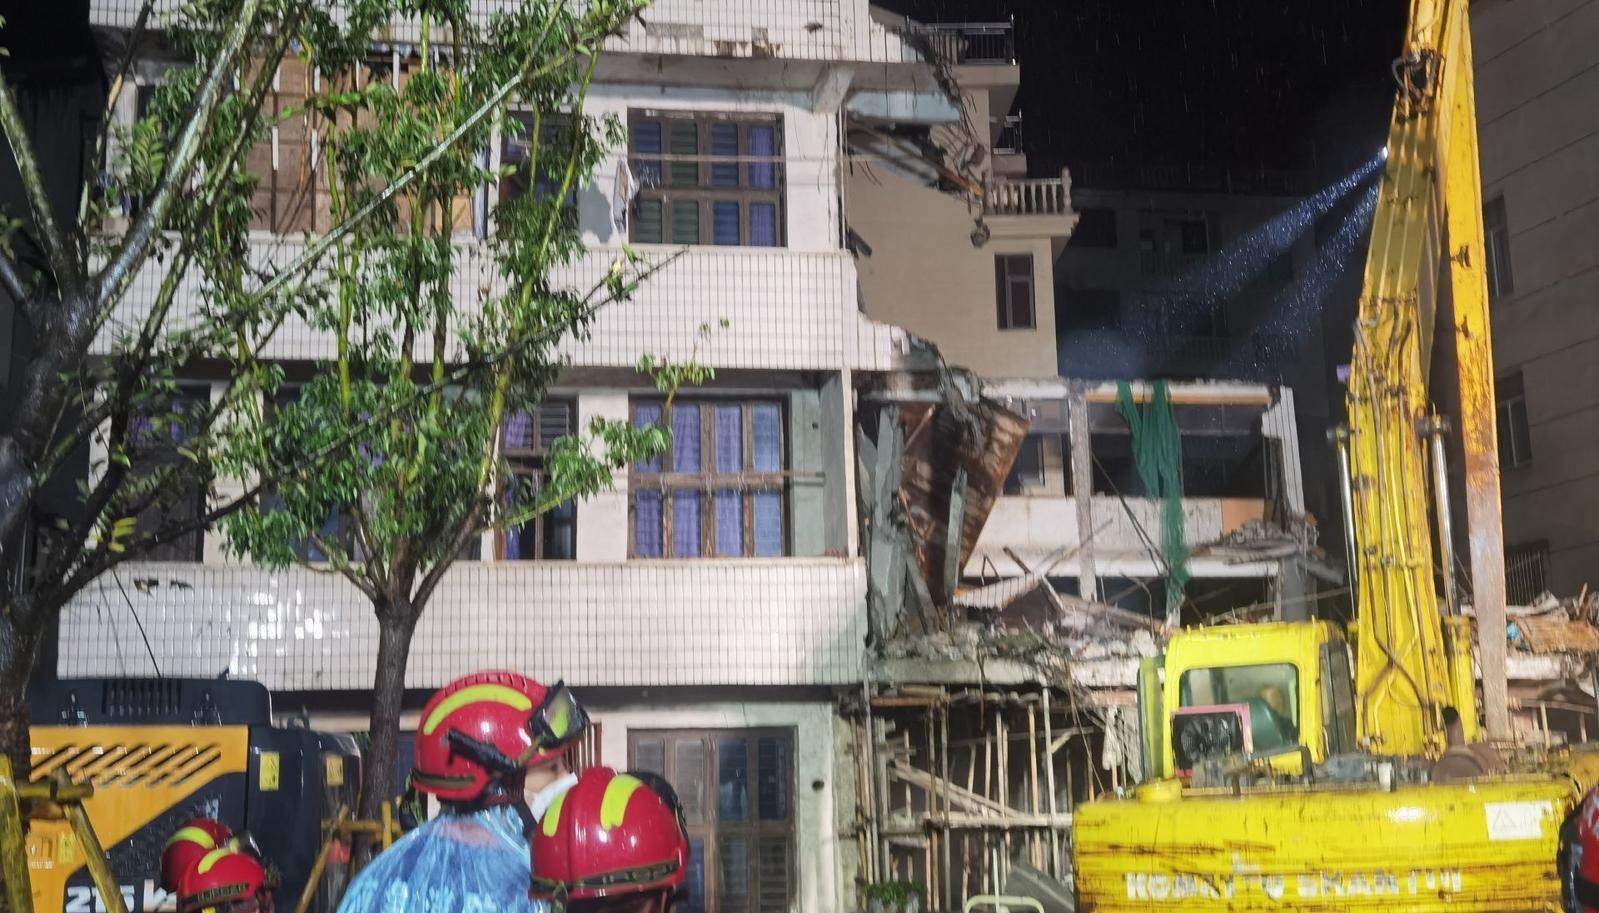 温州永嘉一民房坍塌 被困4人全部遇难